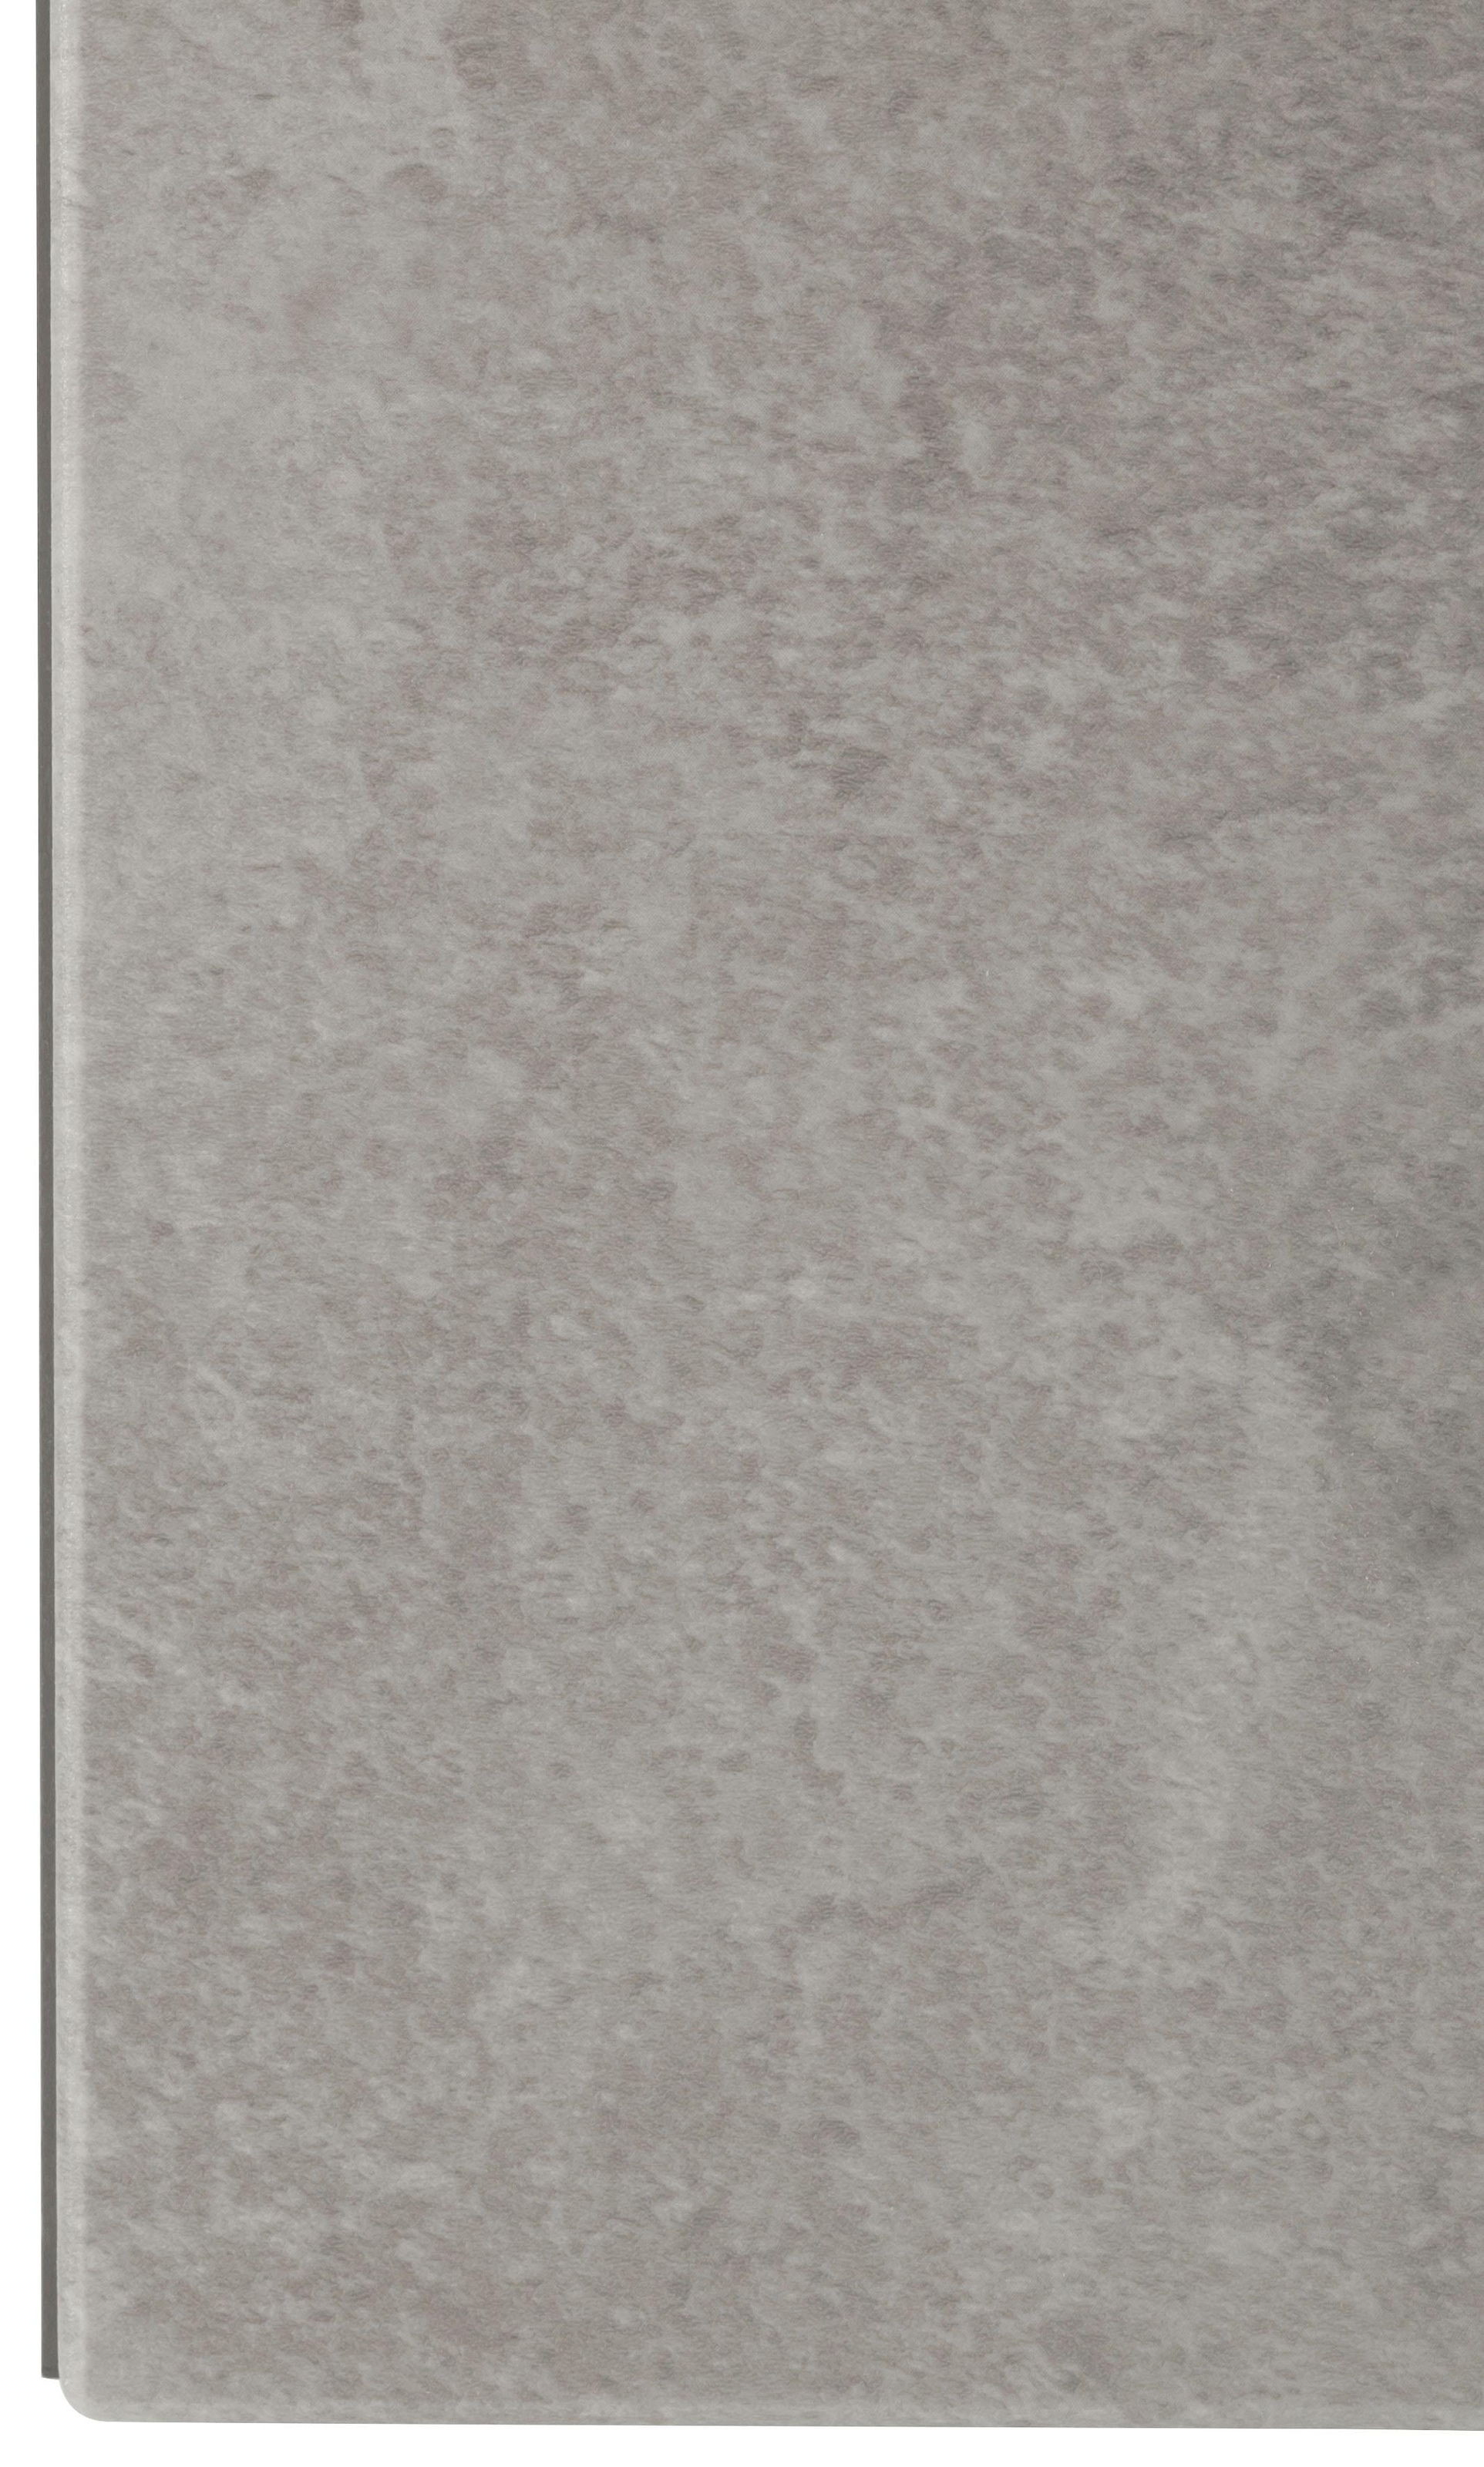 HELD MÖBEL Klapphängeschrank »Tulsa«, 100 cm breit, mit 1 Klappe, schwarzer Metallgriff, MDF Front